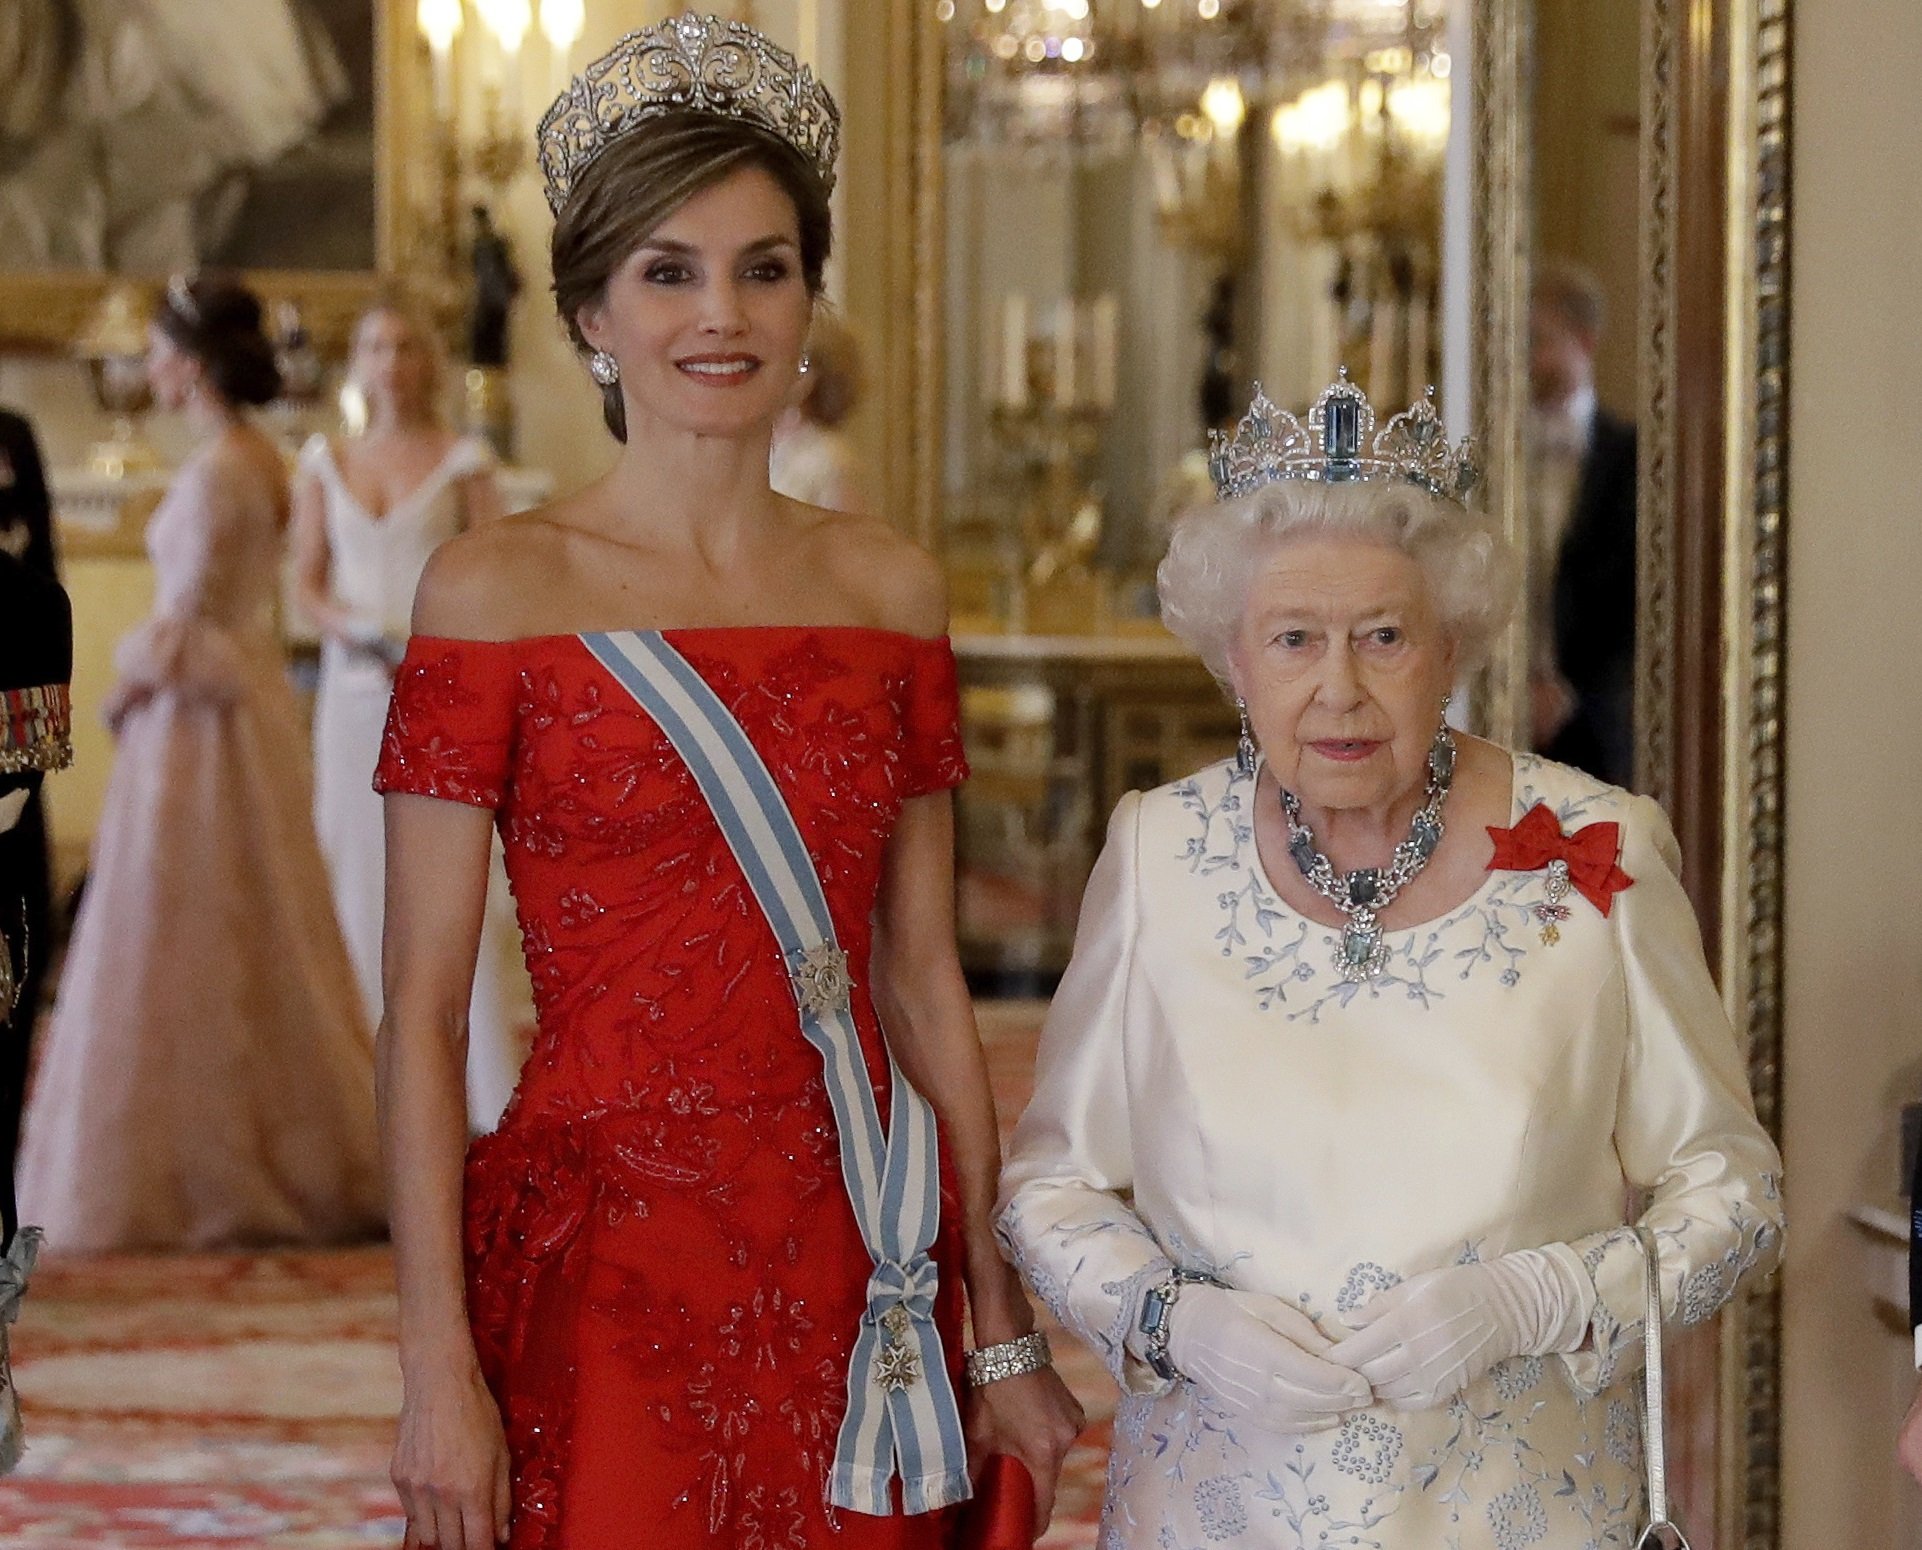 La reina Elizabeth II y la reina Letizia en el Palacio de Buckingham, el 12 de julio de 2017 en Londres, Inglaterra. | Foto: Getty Images